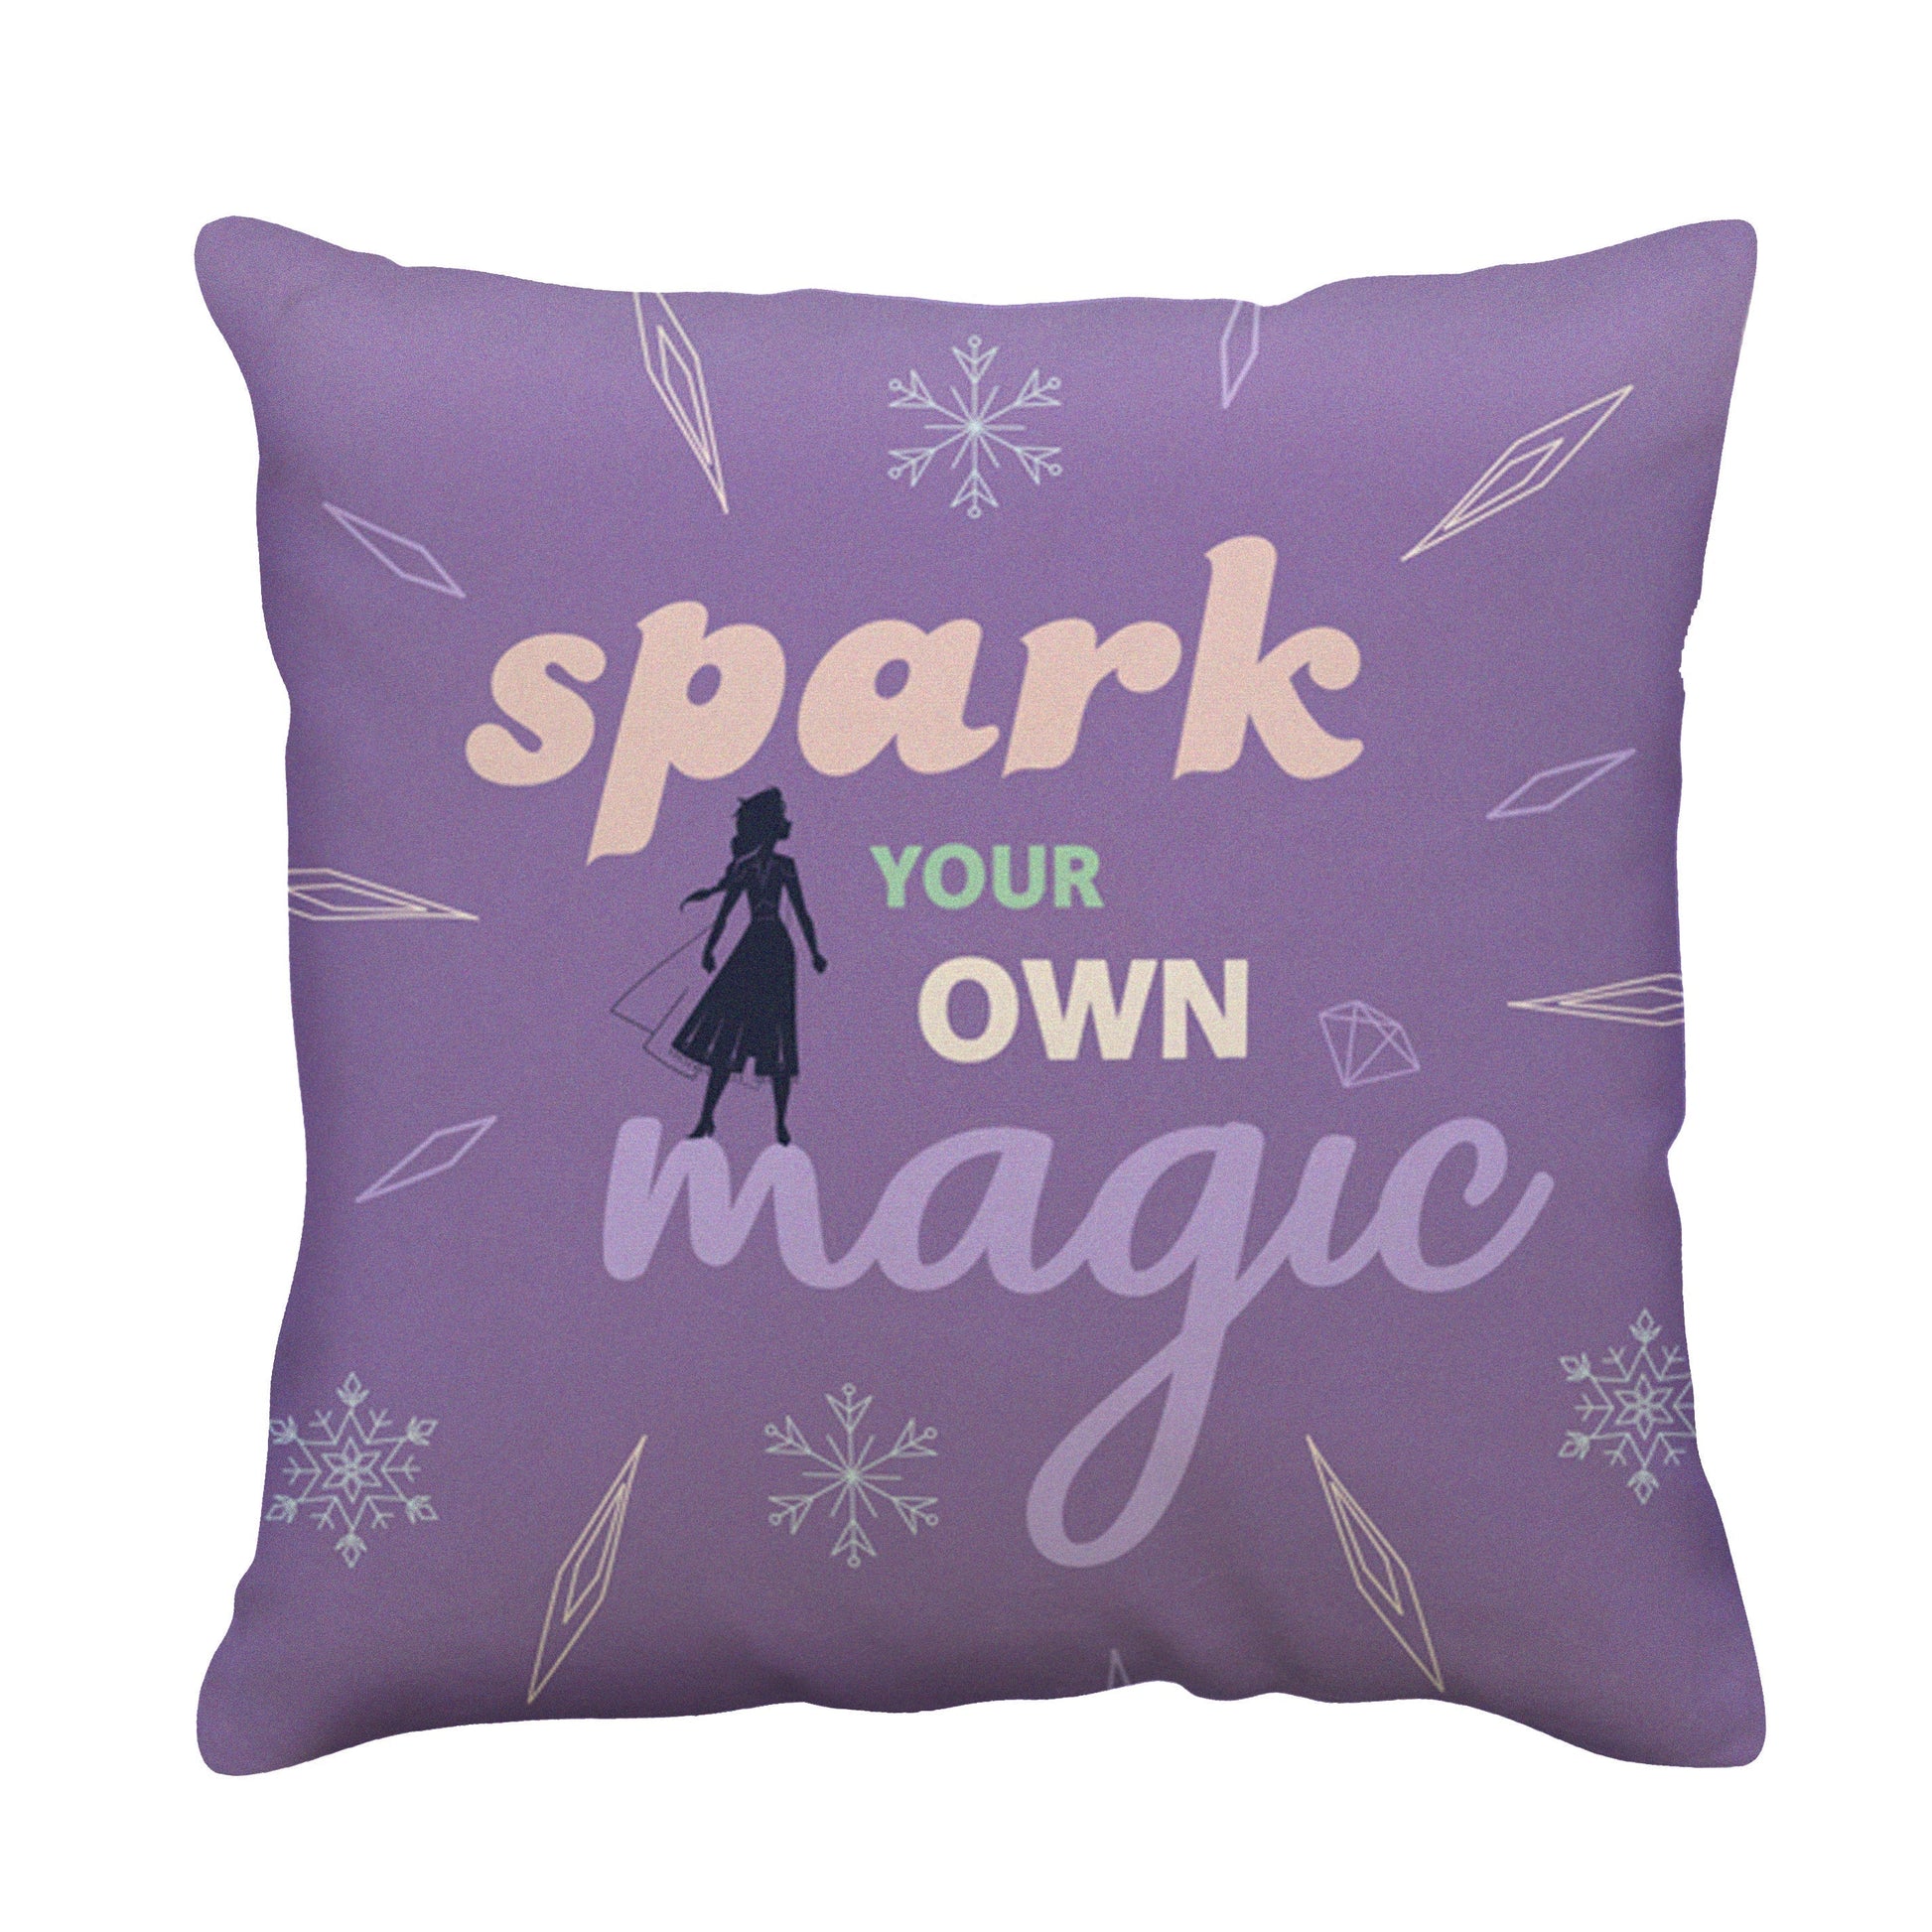 Reverso del cojin cuadrado de Frozen con las letras "Spark your own magic" color morado marca mashini